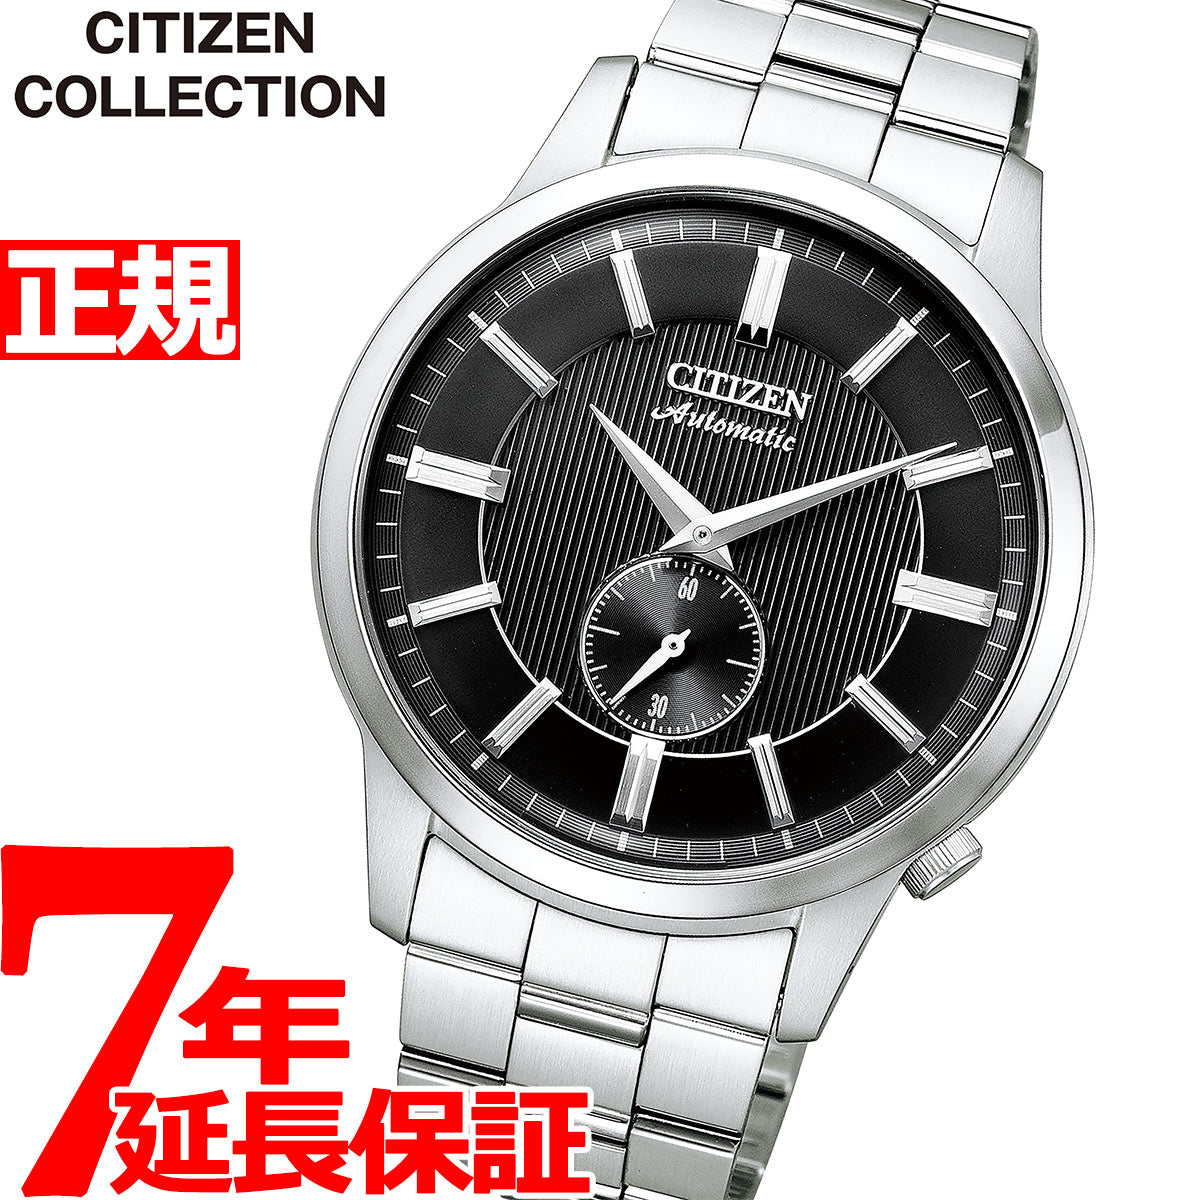 シチズン CITIZEN 腕時計 メンズ NK5000-98E シチズン コレクション メカニカル クラシカルライン スモールセコンド CITIZEN COLLECTION 自動巻き（8322/手巻き付） ブラックxシルバー アナログ表示